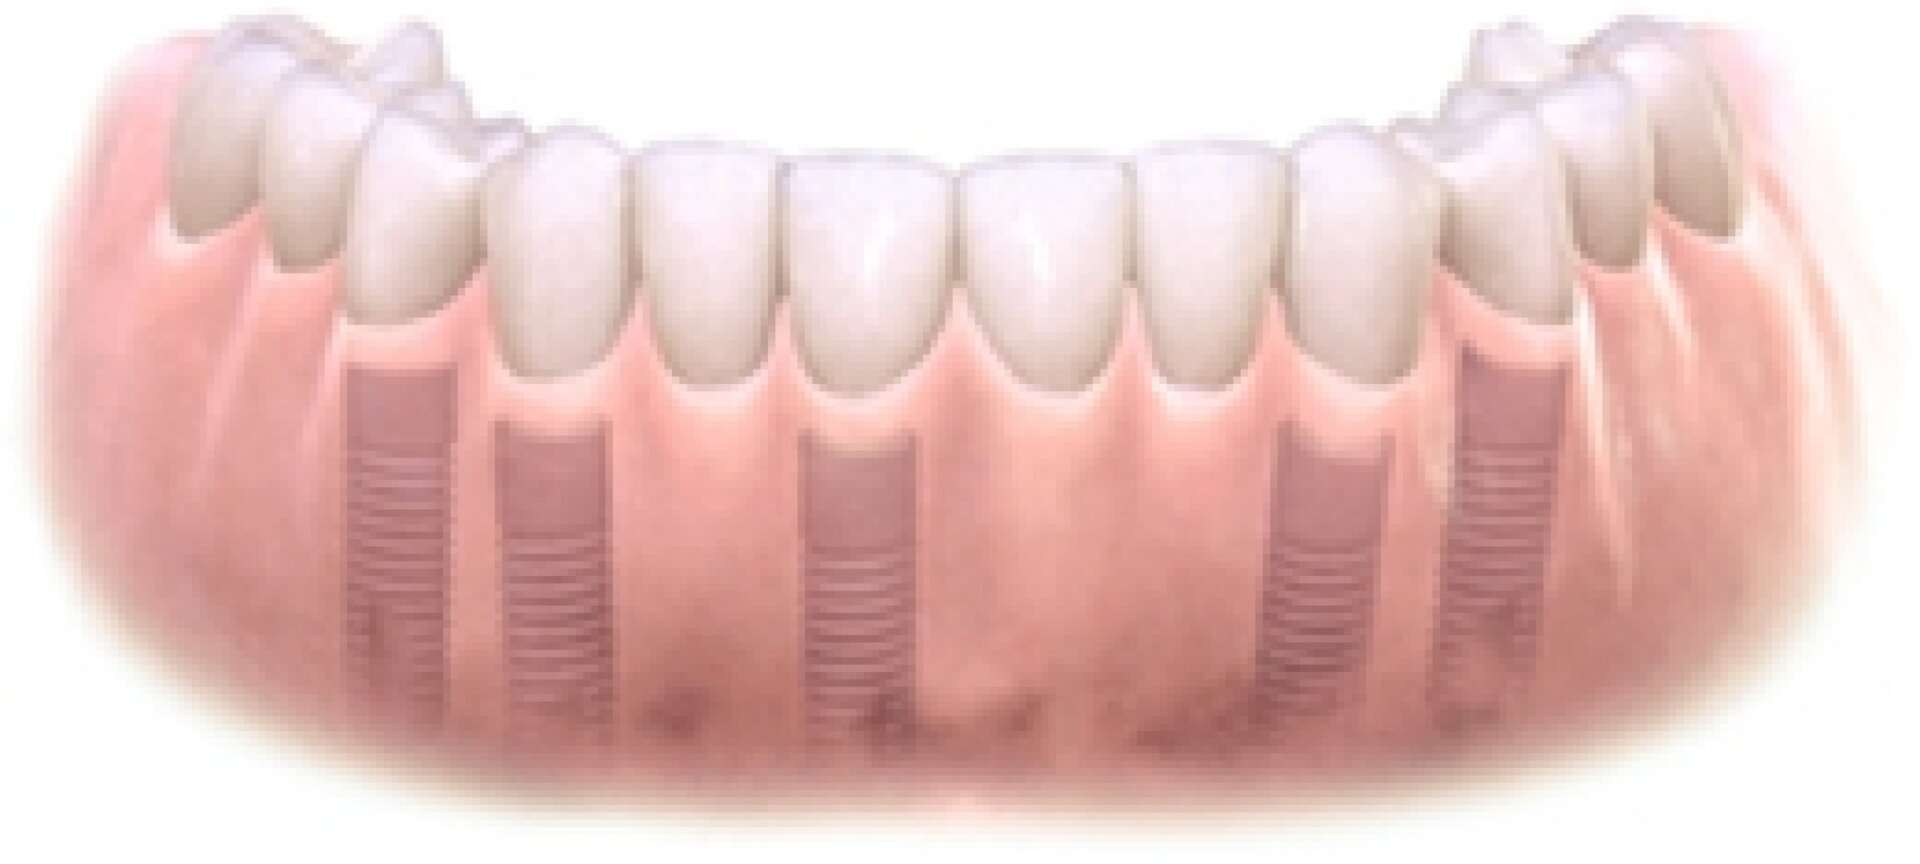 All teeth implants 4